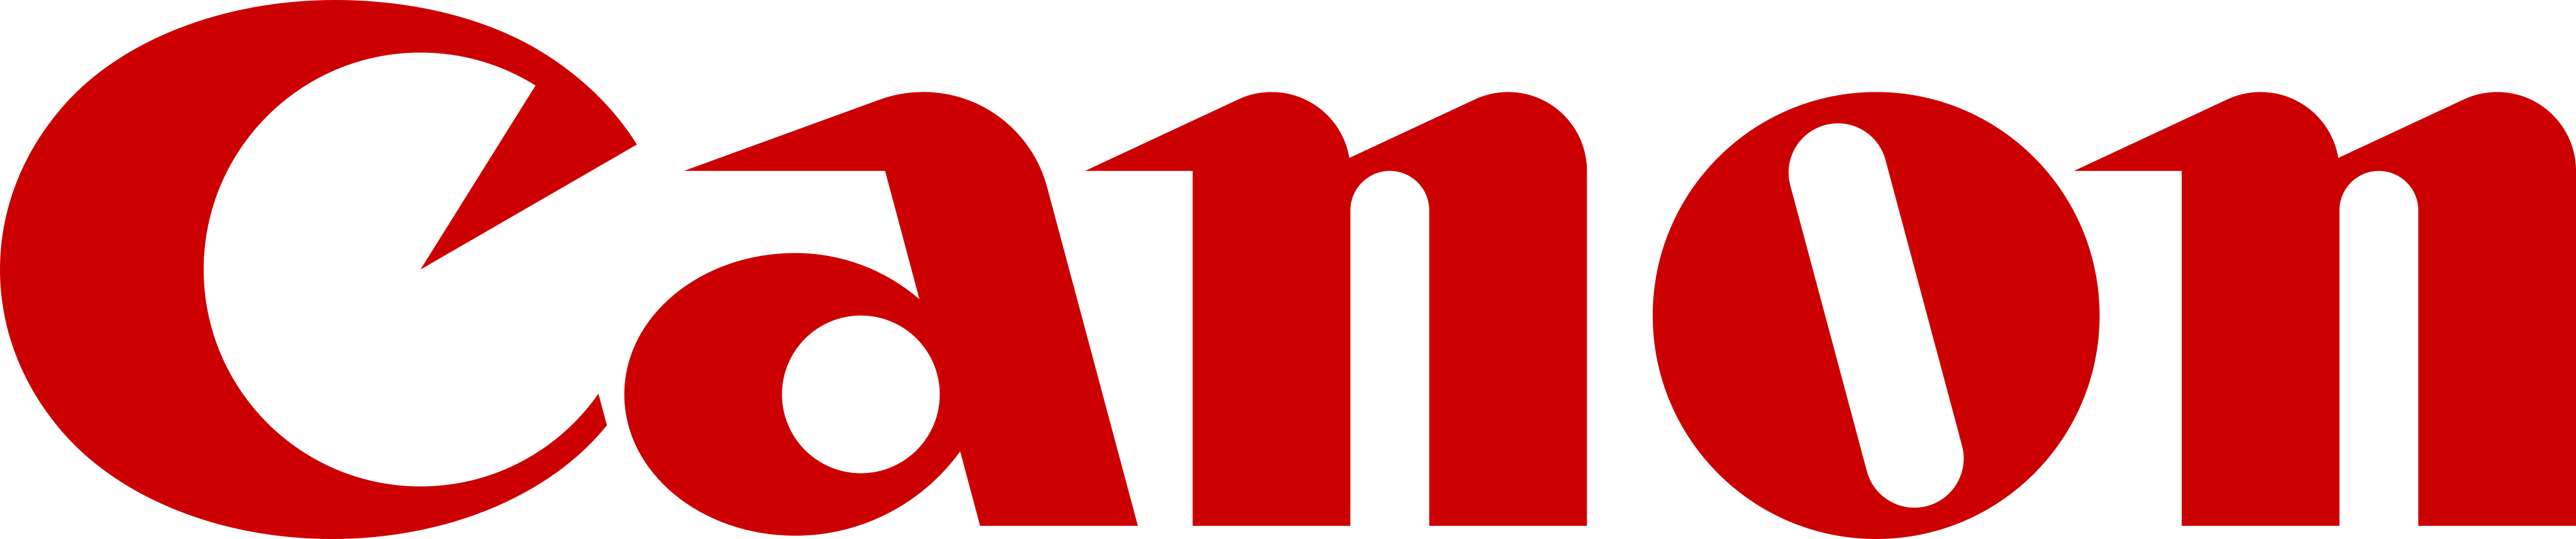 canon-logo-6